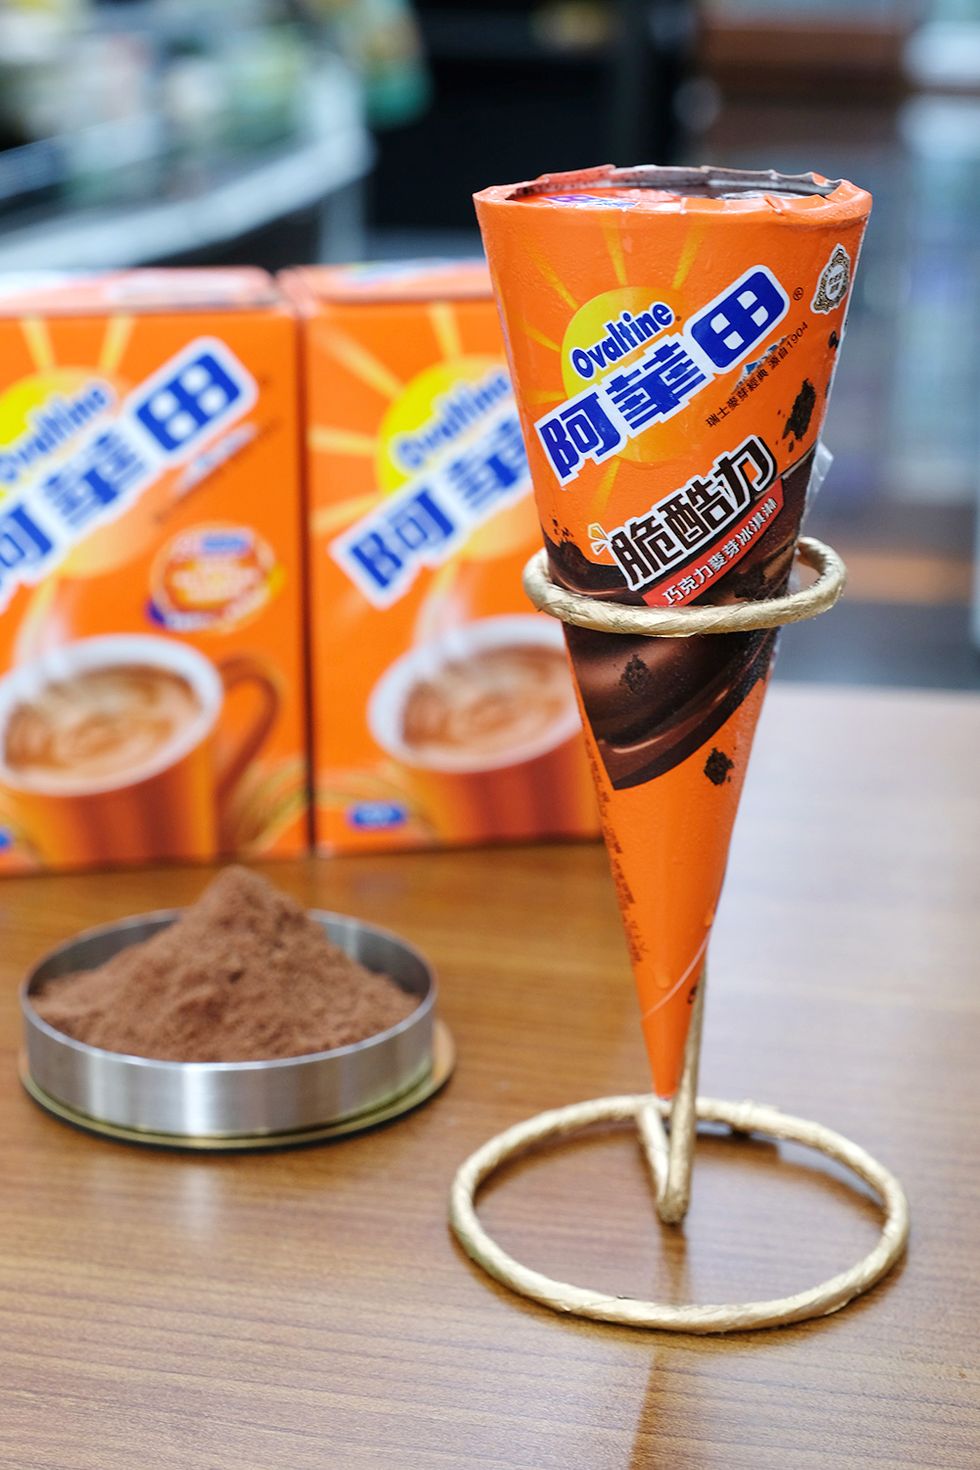 HERSHEY'S、阿華田聯名 萊爾富推出限量「杜老爺甜筒」 8/14獨家上市